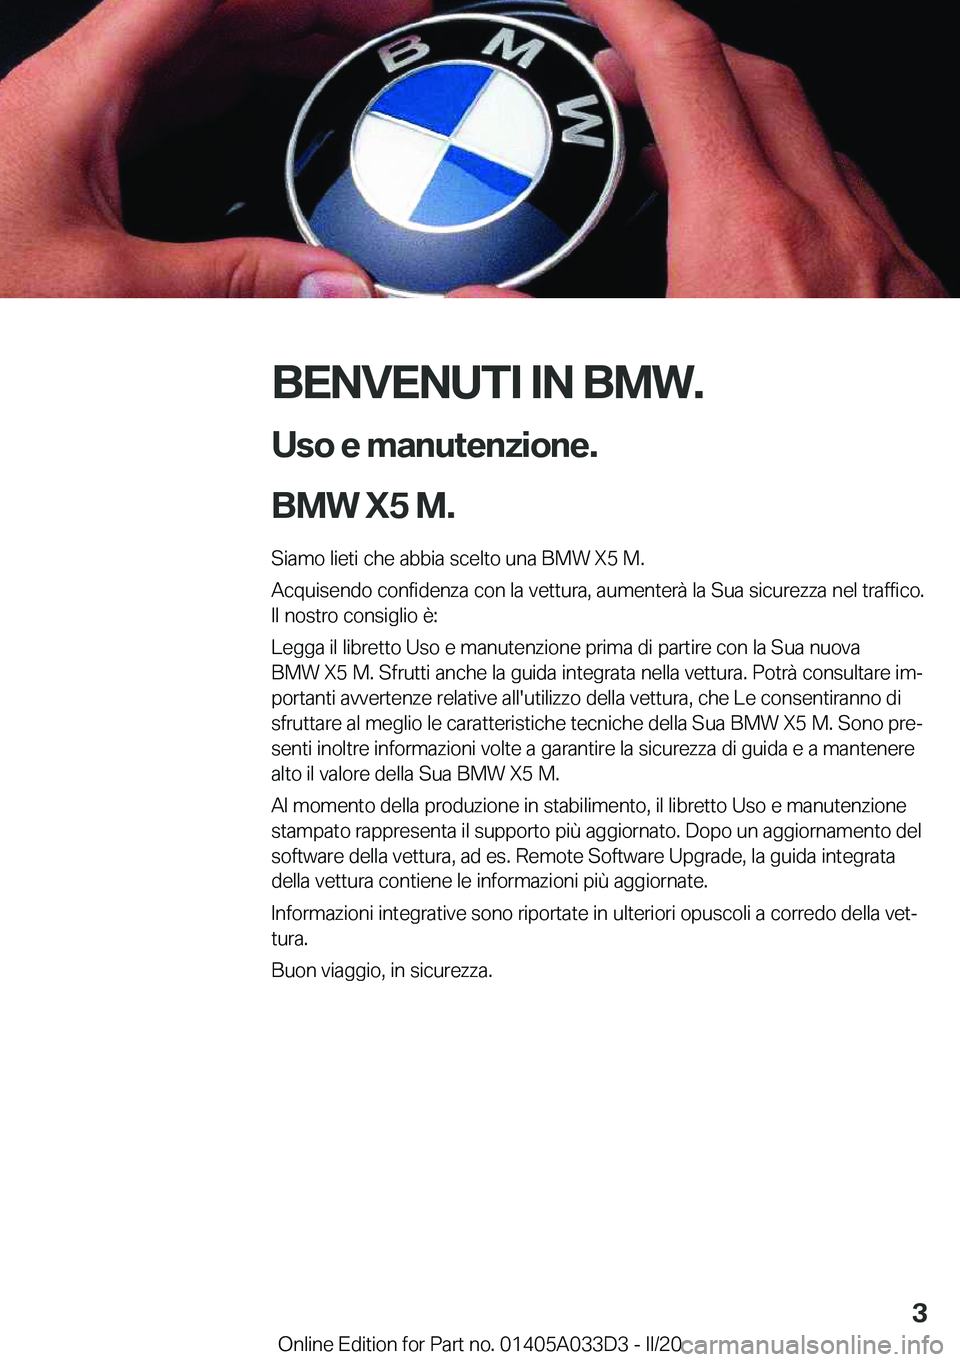 BMW X5 M 2020  Libretti Di Uso E manutenzione (in Italian) �B�E�N�V�E�N�U�T�I��I�N��B�M�W�.�U�s�o��e��m�a�n�u�t�e�n�z�i�o�n�e�.
�B�M�W��X�5��M�.
�S�i�a�m�o��l�i�e�t�i��c�h�e��a�b�b�i�a��s�c�e�l�t�o��u�n�a��B�M�W��X�5��M�.
�A�c�q�u�i�s�e�n�d�o��